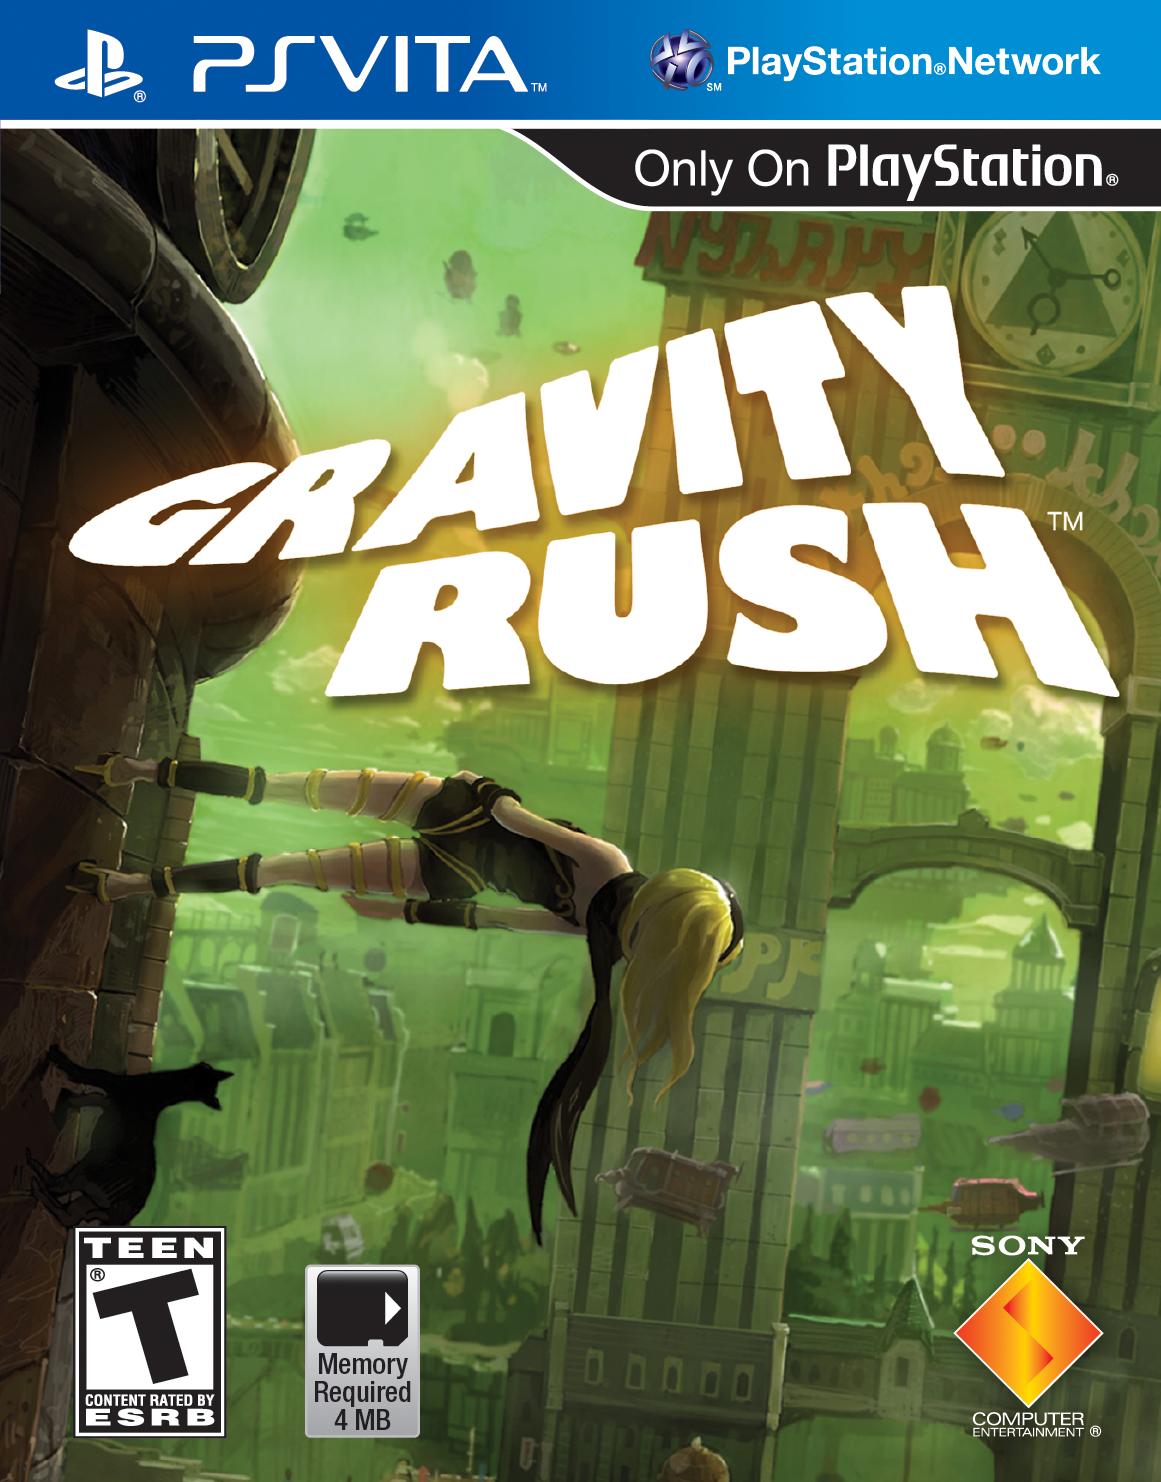 Gravity Rush Game Digital Wallpapers